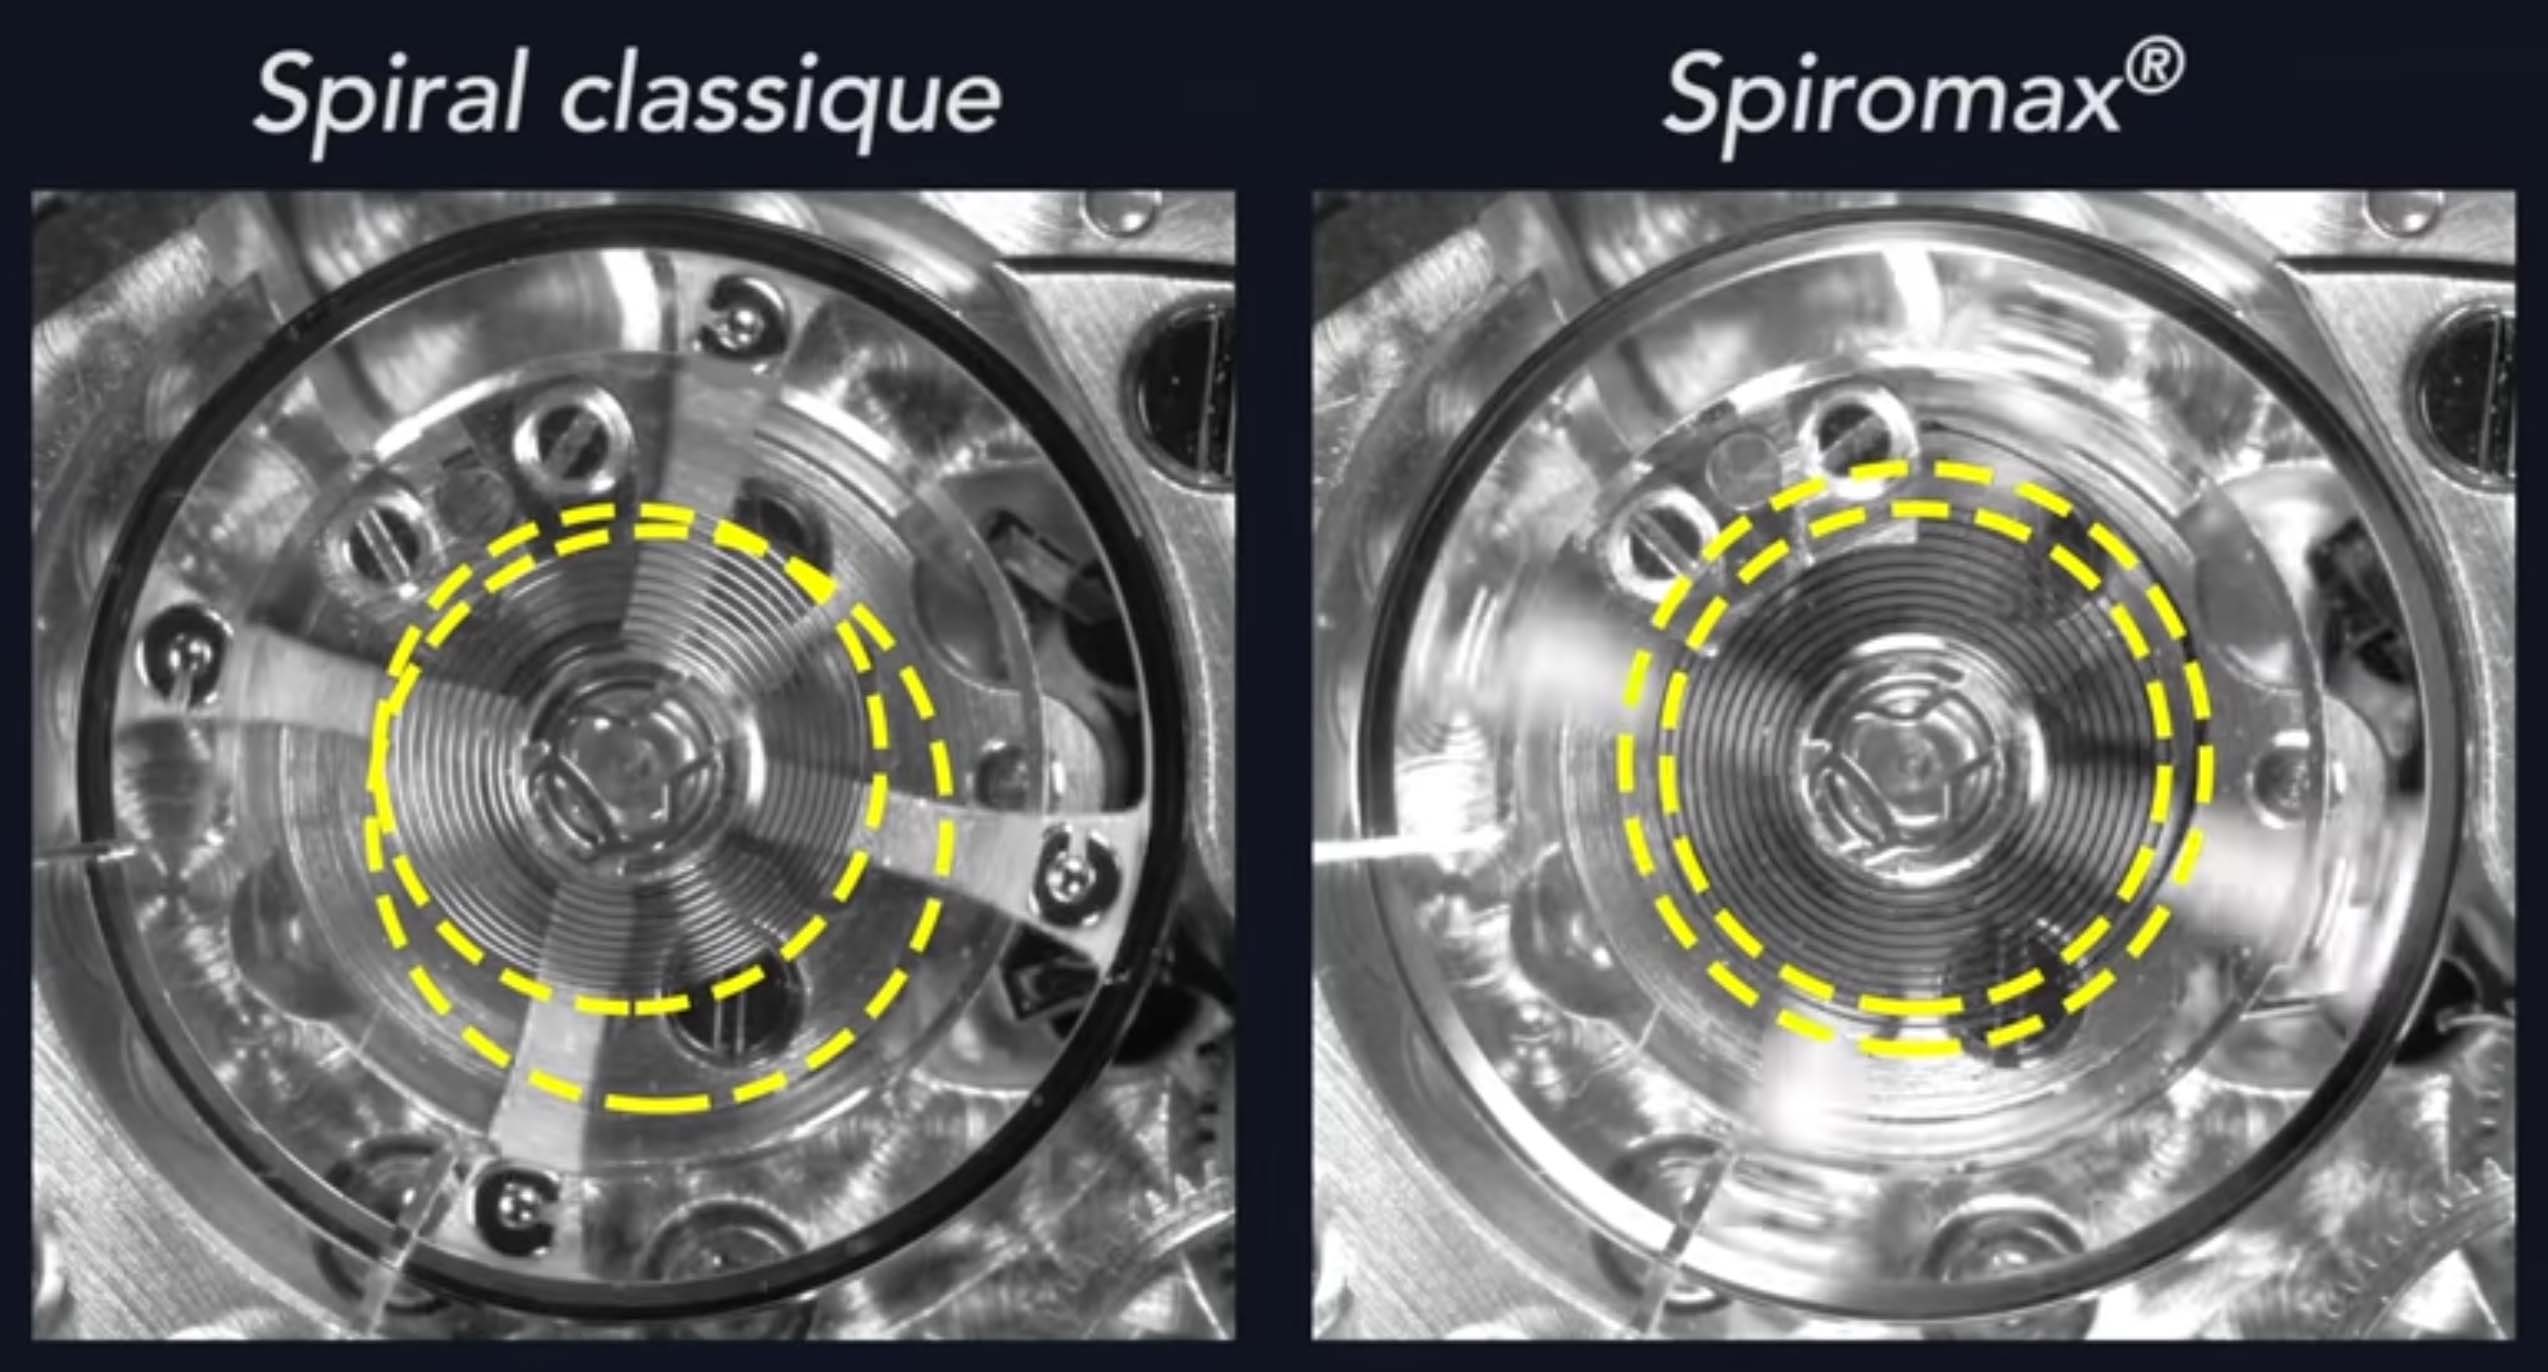 Patek Philippe_Spiromax vs normal spiral_HighTime